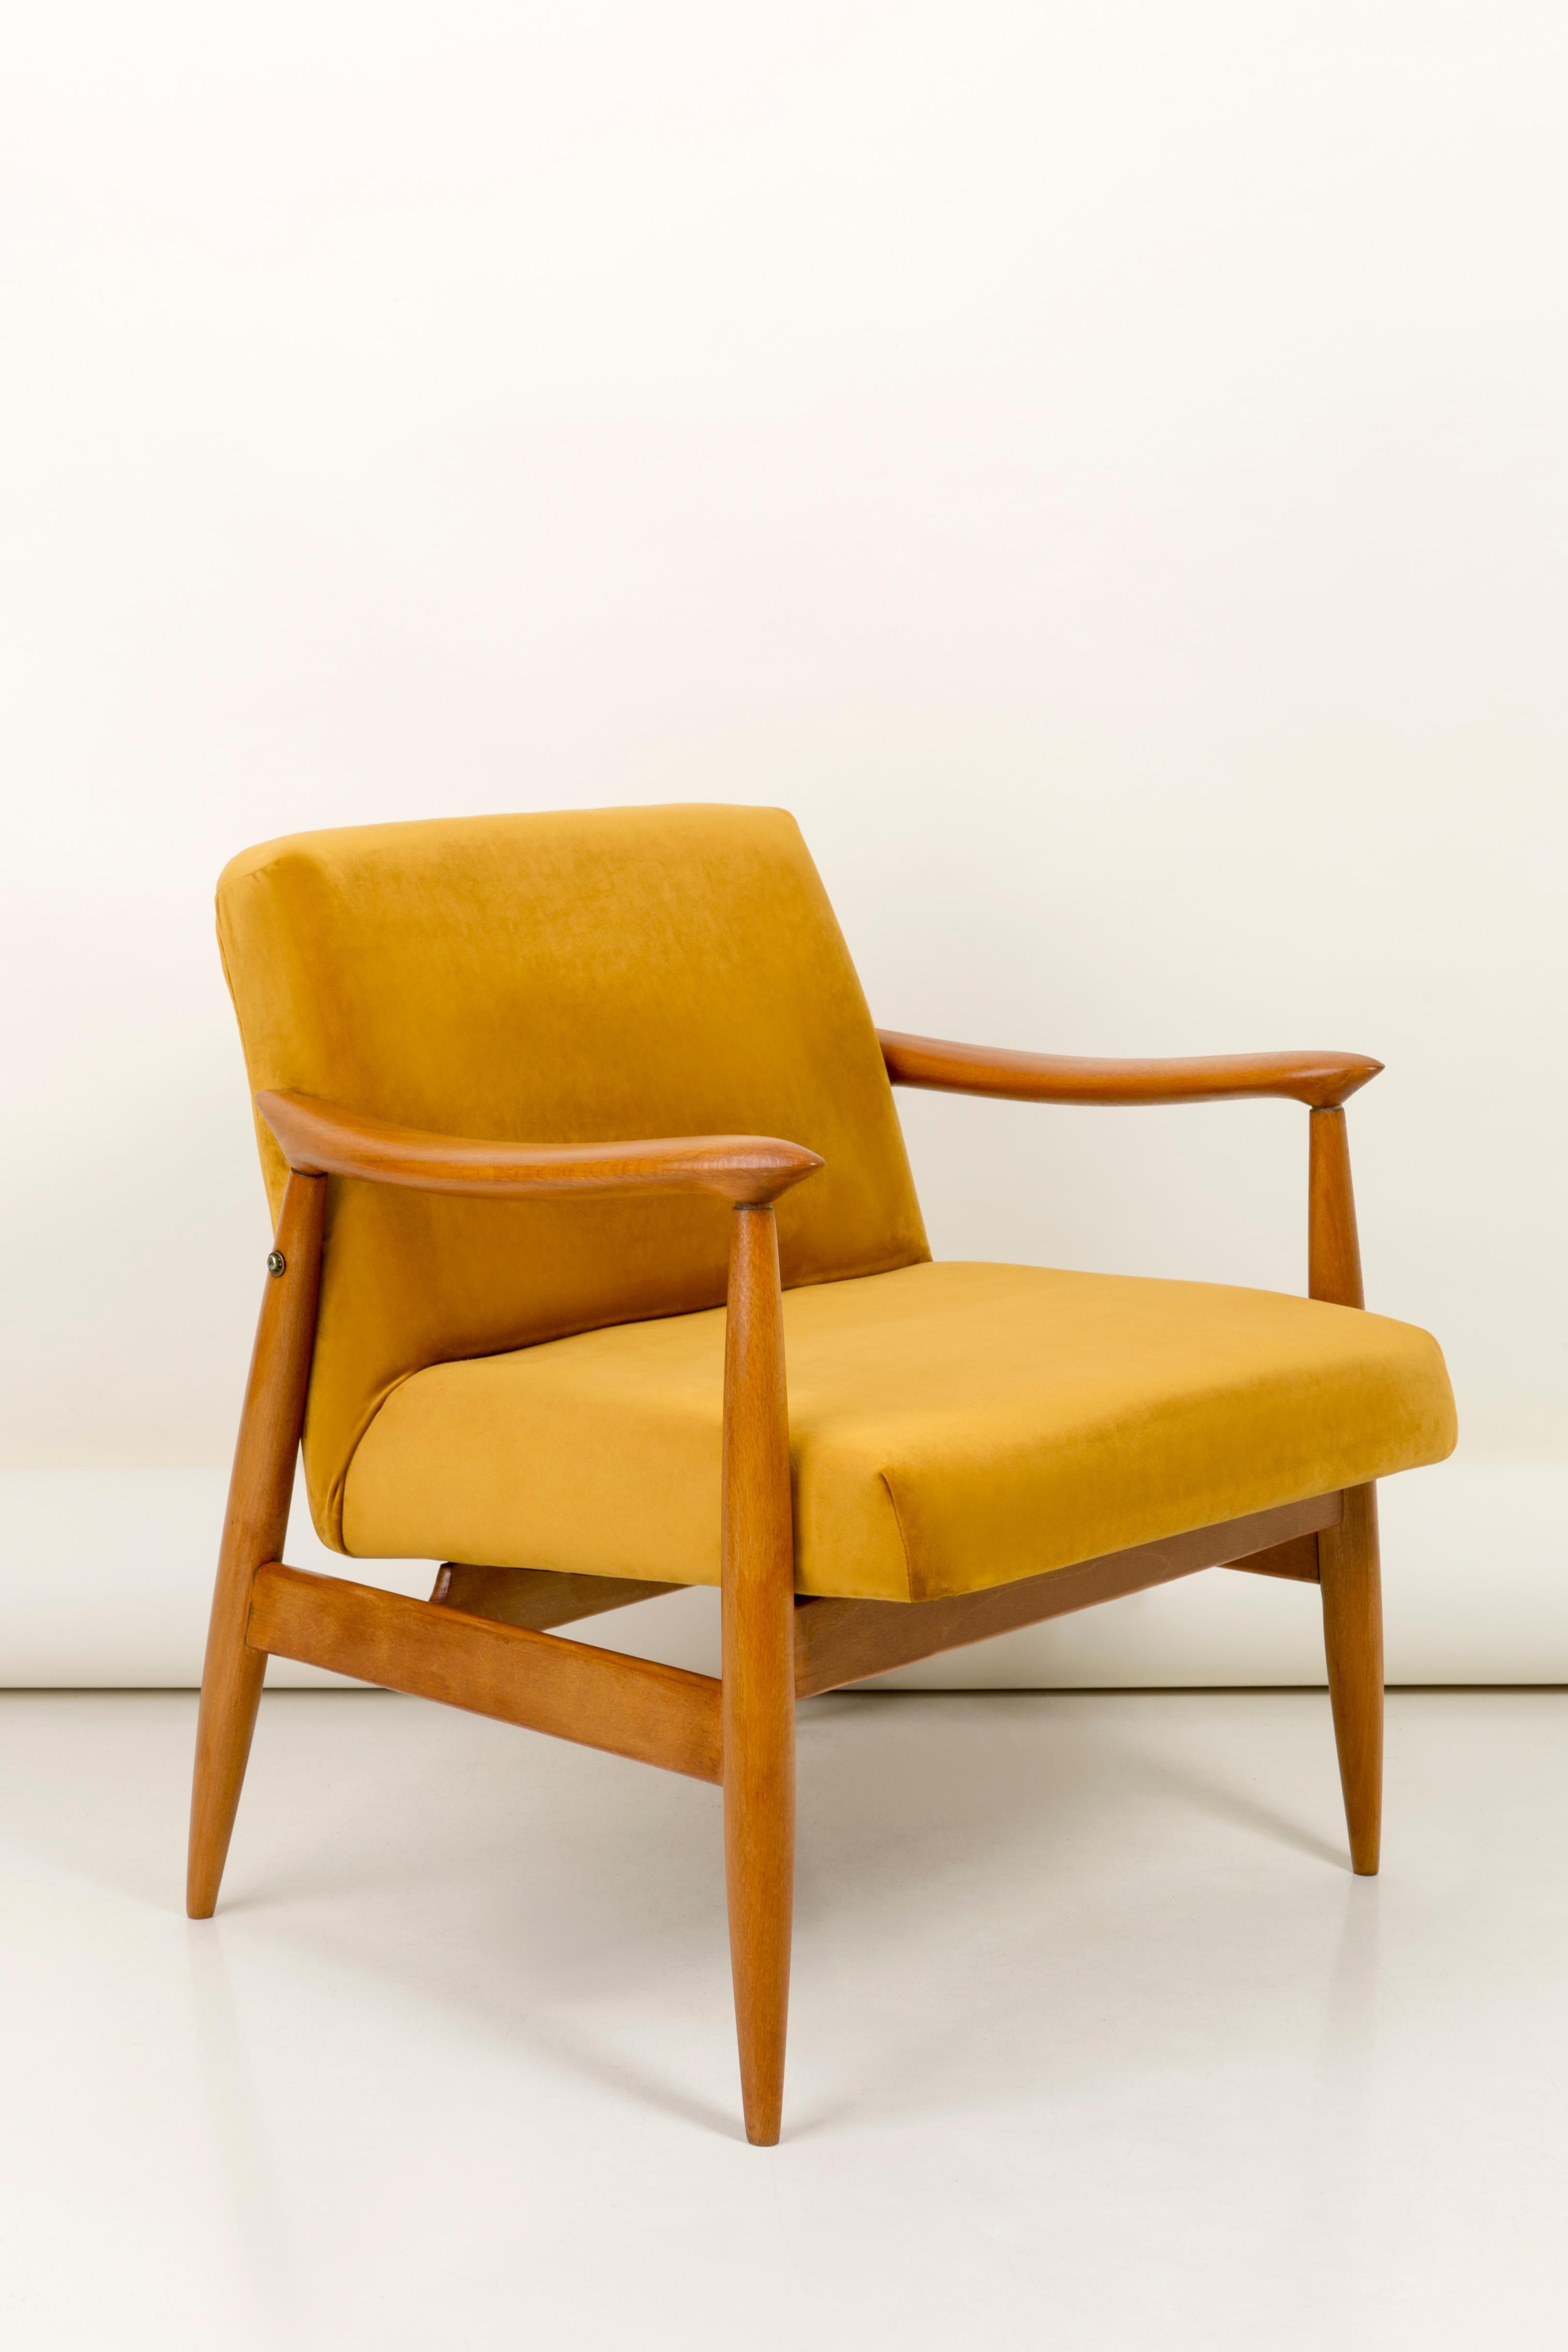 Der GFM-Sessel ist eine Ikone des polnischen Designs aus der PRL-Zeit.

Der berühmte Sessel wurde 1962 von dem polnischen Innenarchitekten und Möbeldesigner 
Juliusz Kedziorek. Produziert in der Niederschlesischen Möbelfabrik in